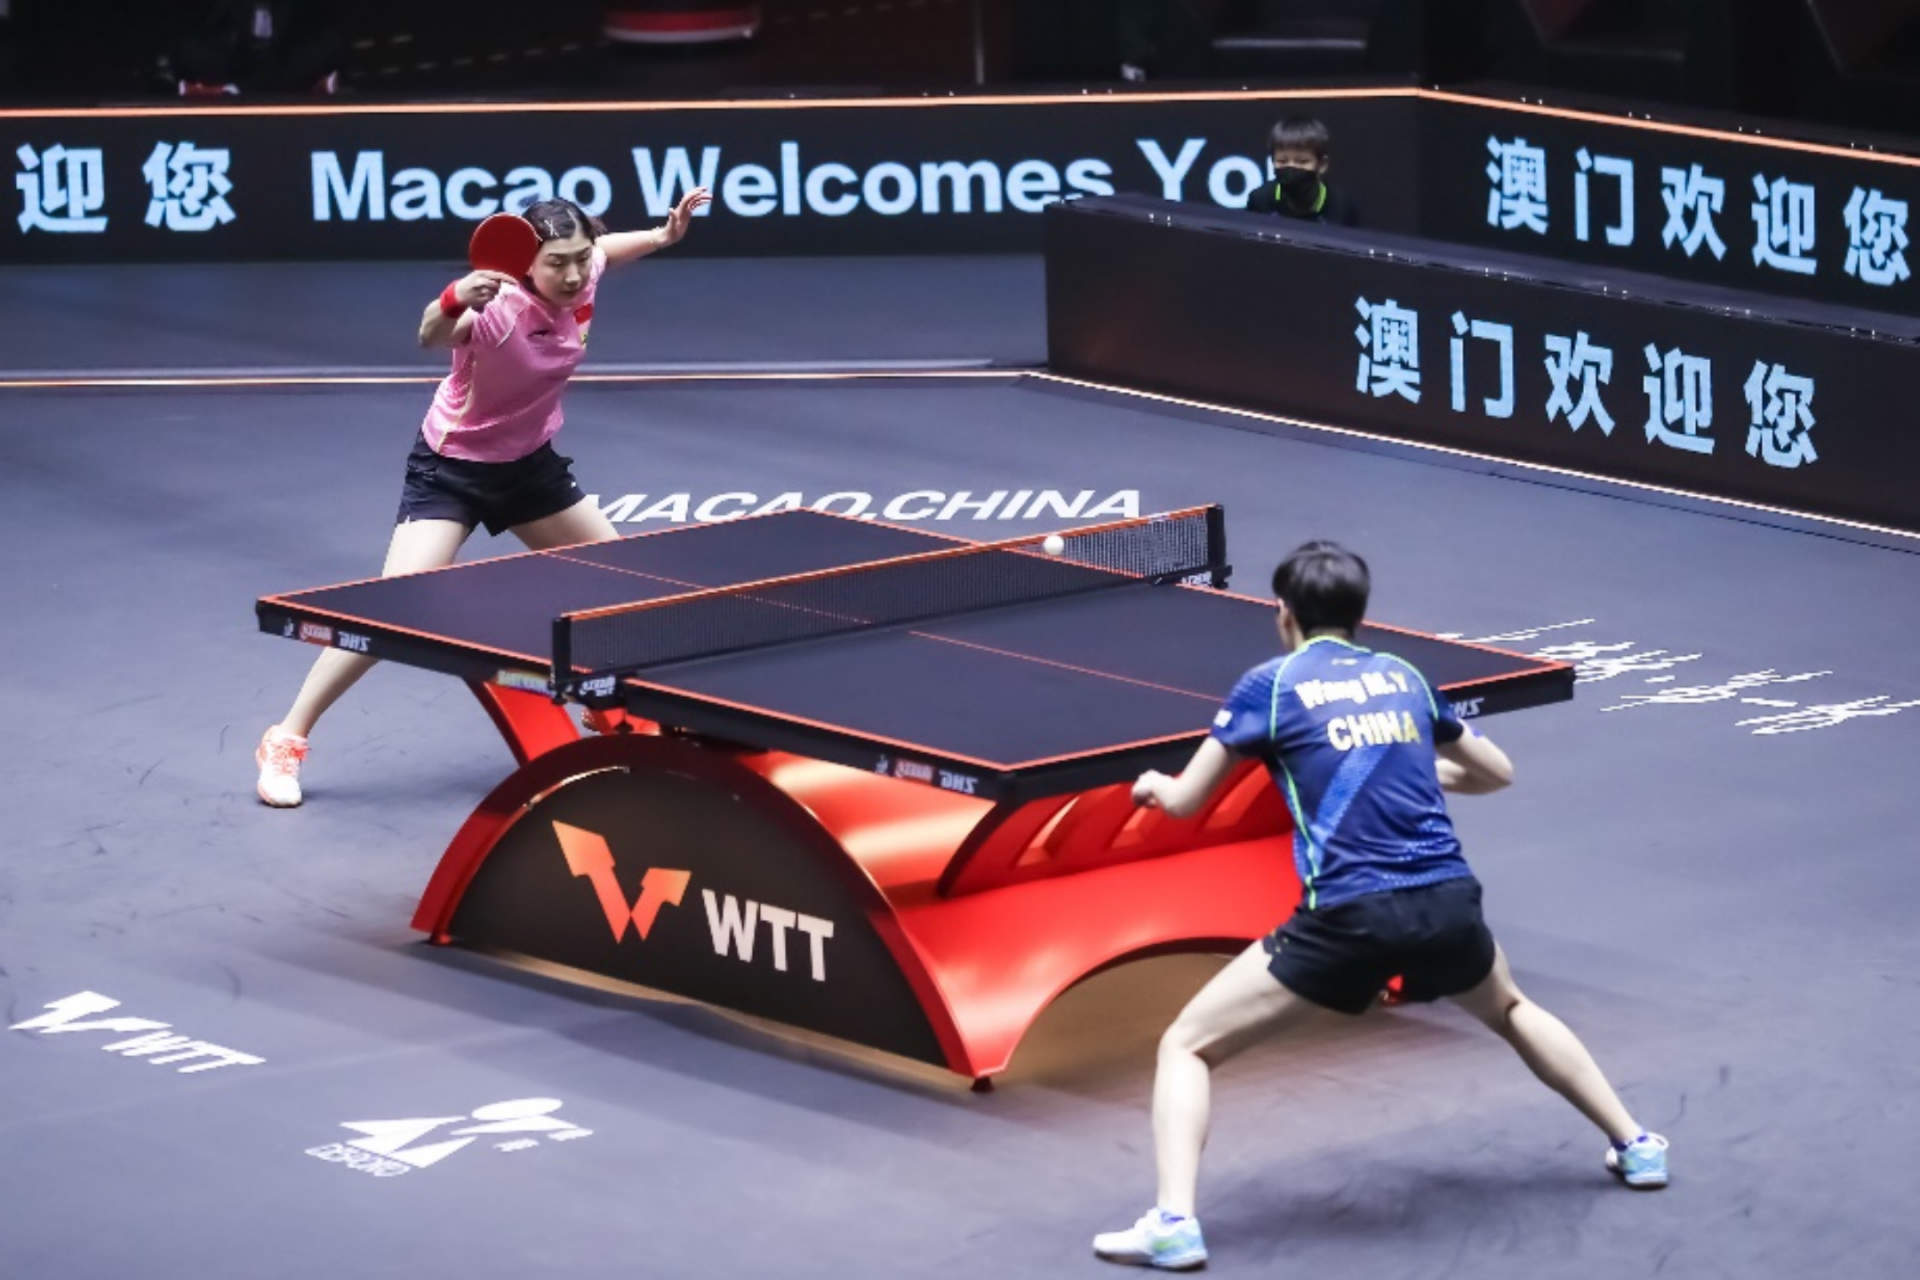 国家乒乓球队的奥运阵容全员出战  星光熠熠耀澳门 “WTT 澳门冠军赛 2021中国之星”完美收官